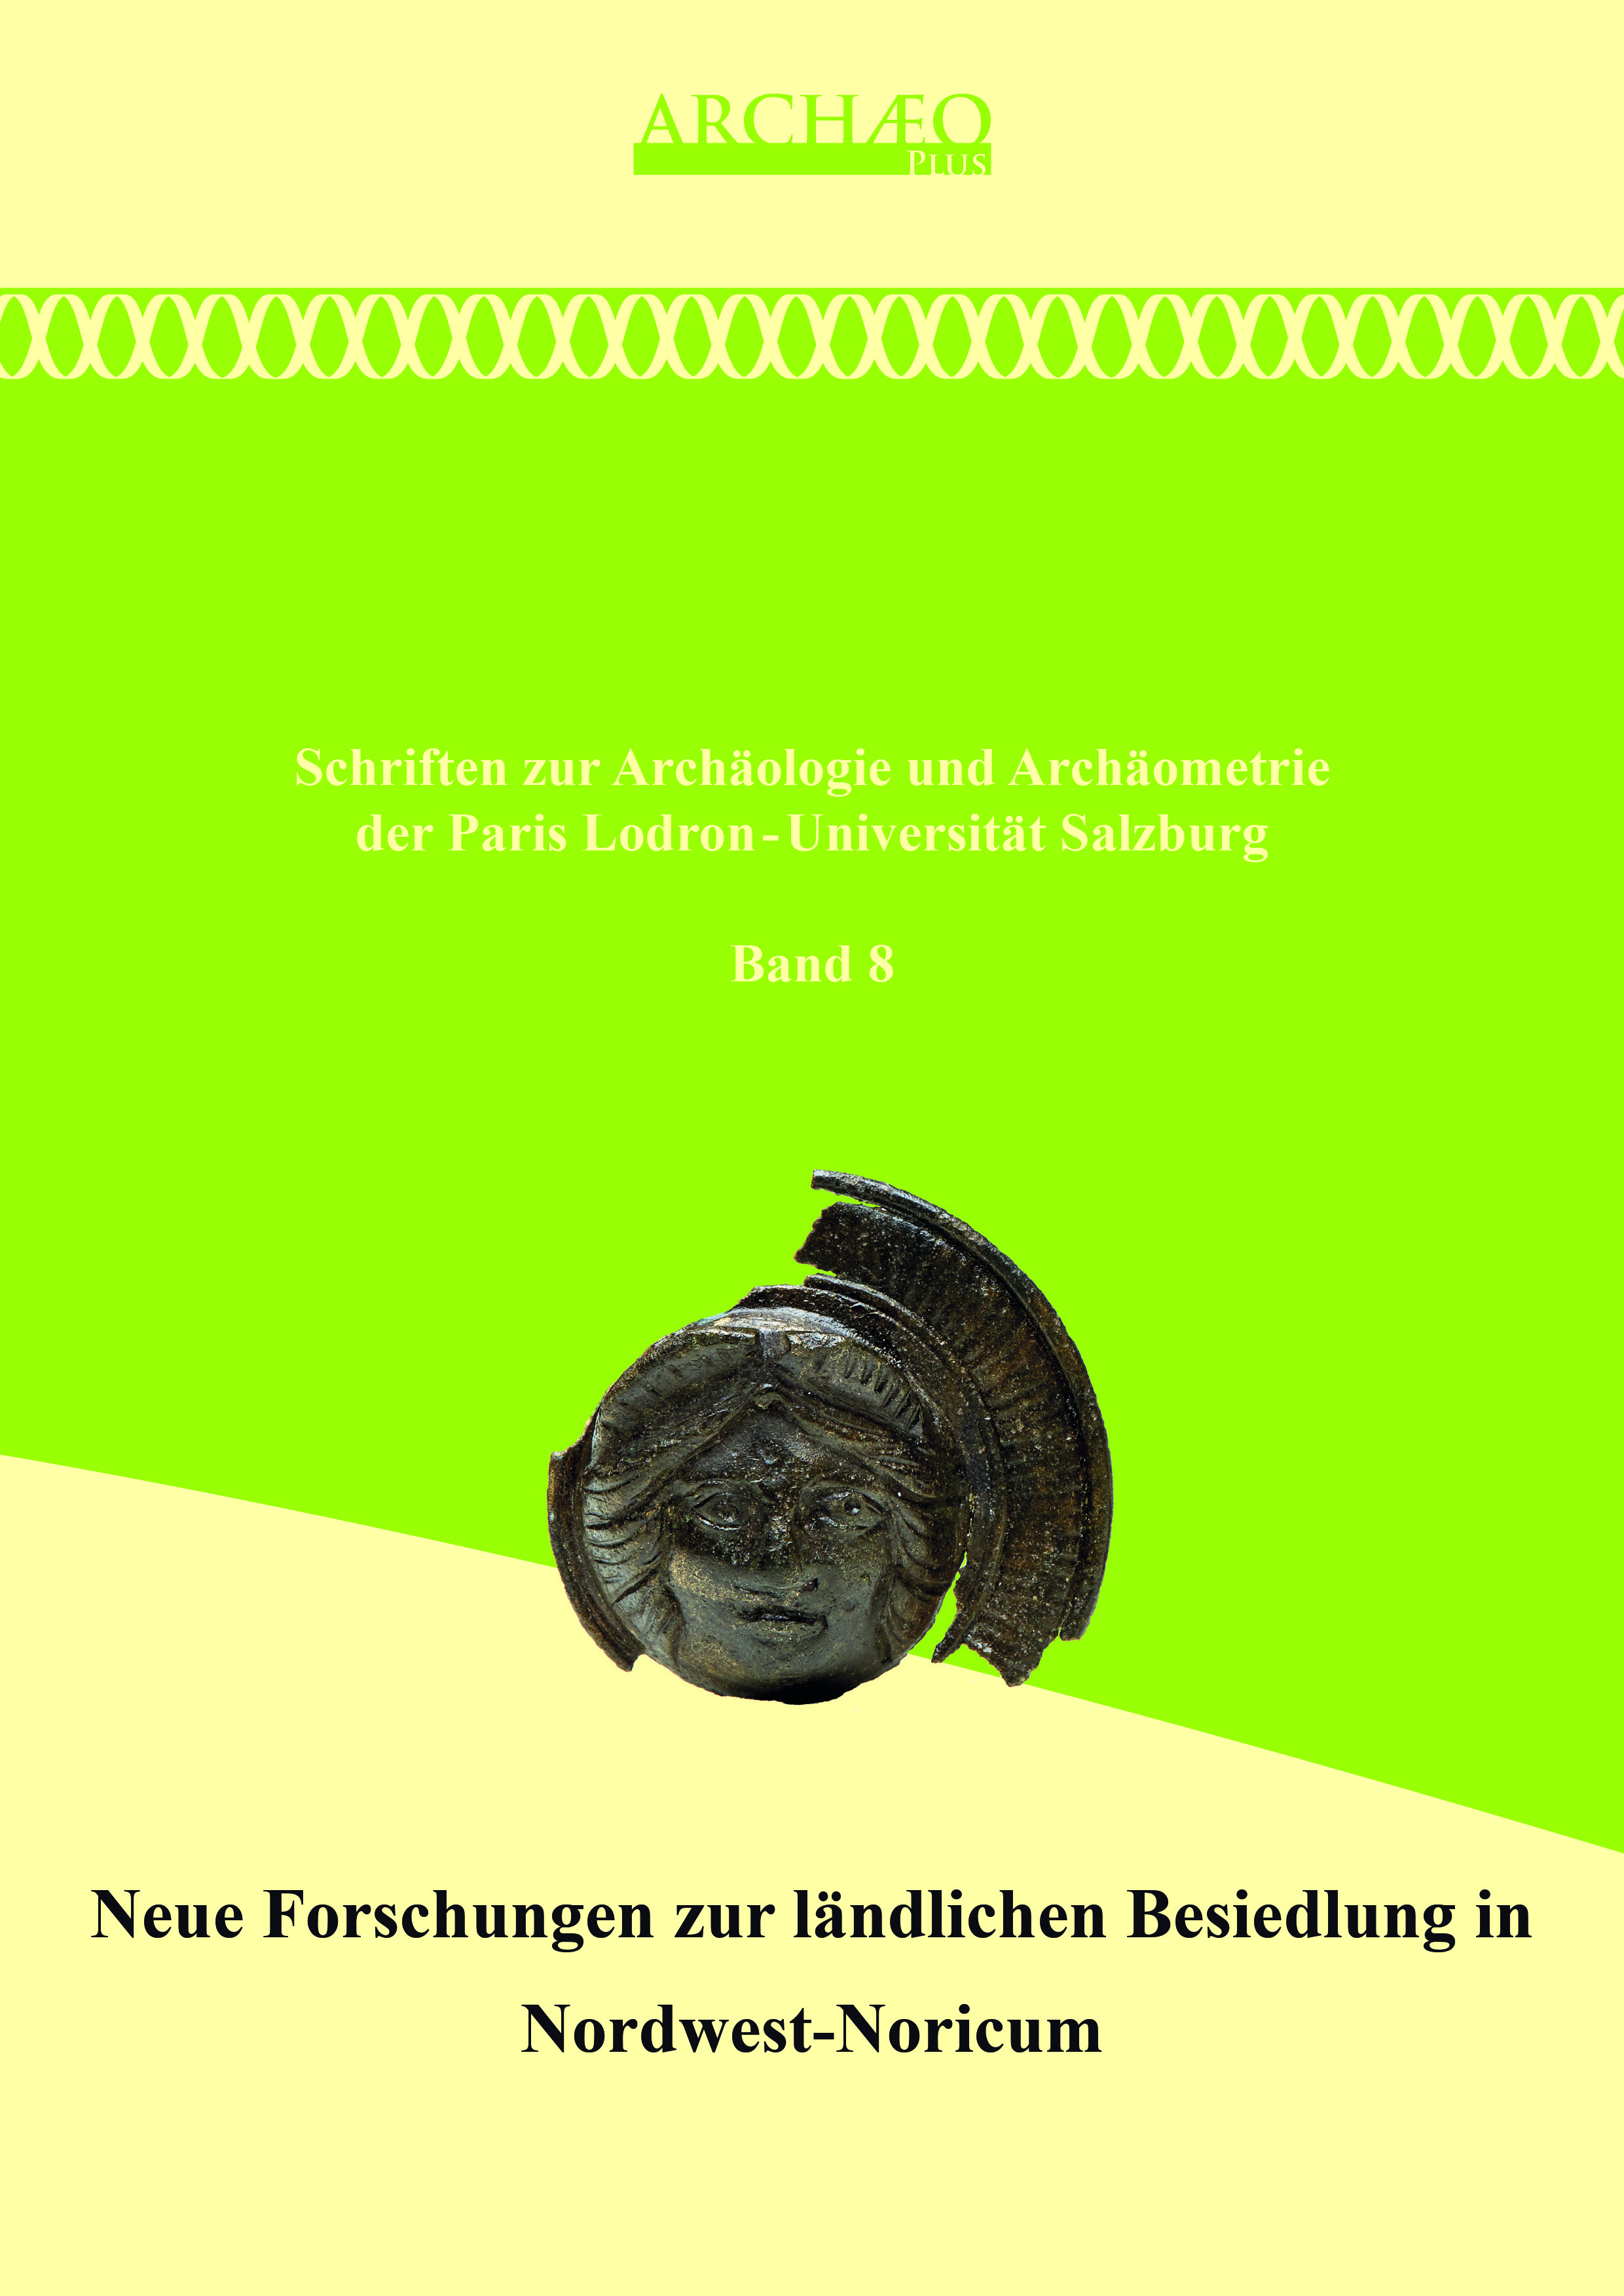 Lang, Felix – Stefan Traxler – Raimund Kastler : Neue Forschungen zur ländlichen Besiedlung in Nordwest-Noricum